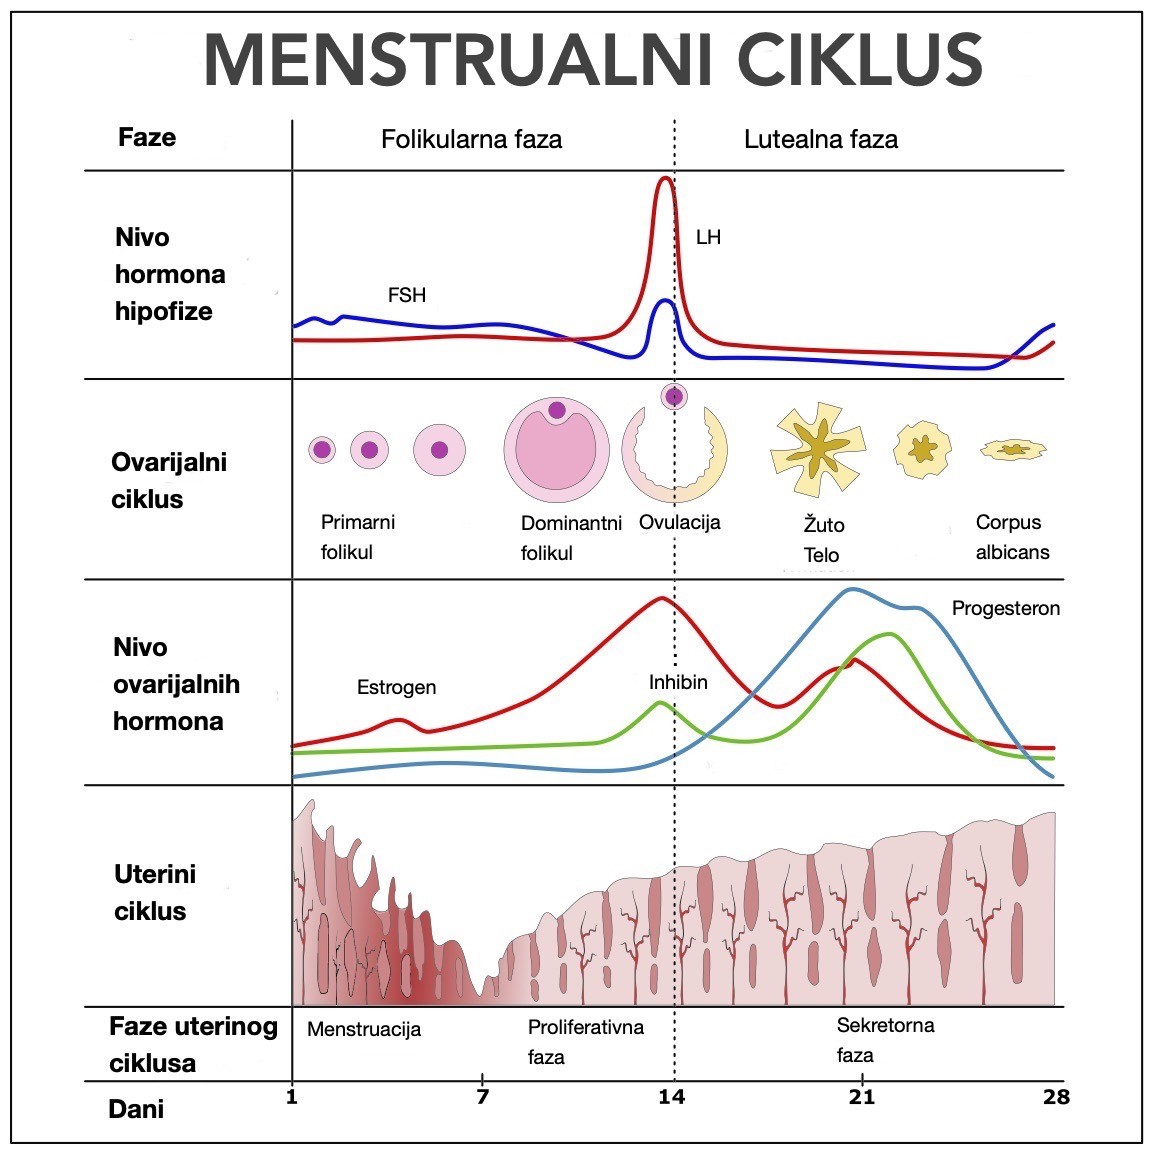 Faze menstrualnog ciklusa